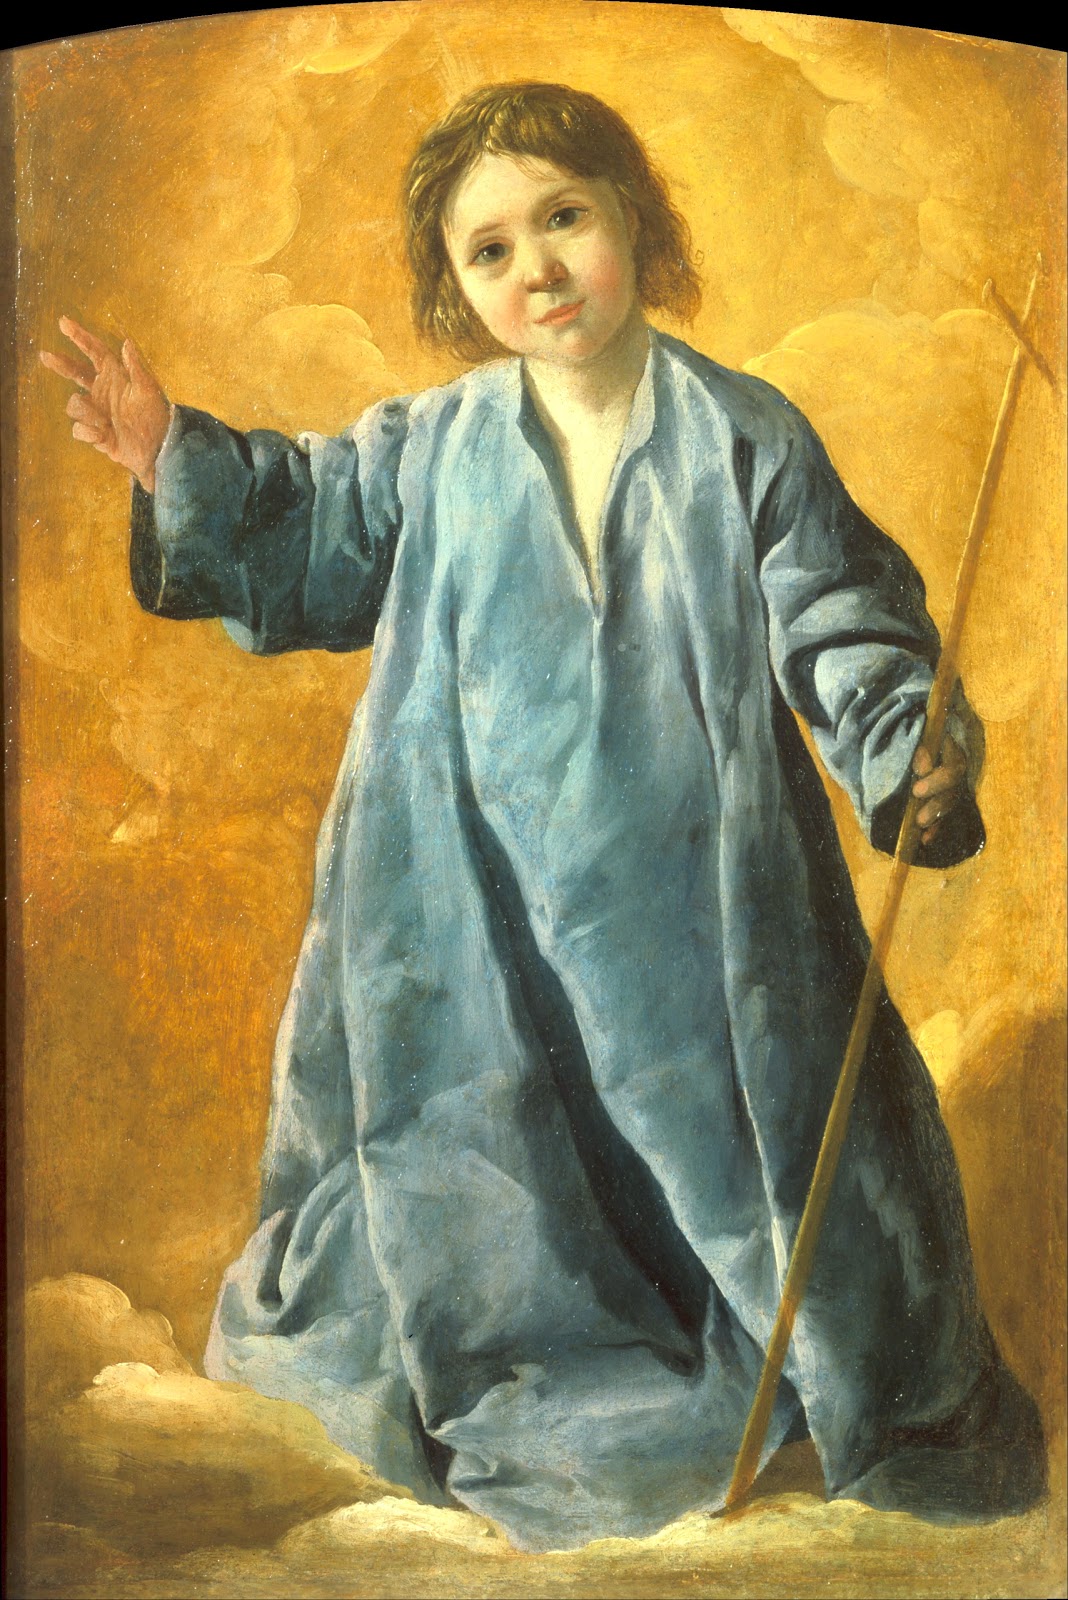 Francisco De Zurbarán (1598-1664) | Life and paintings | Masterpieces